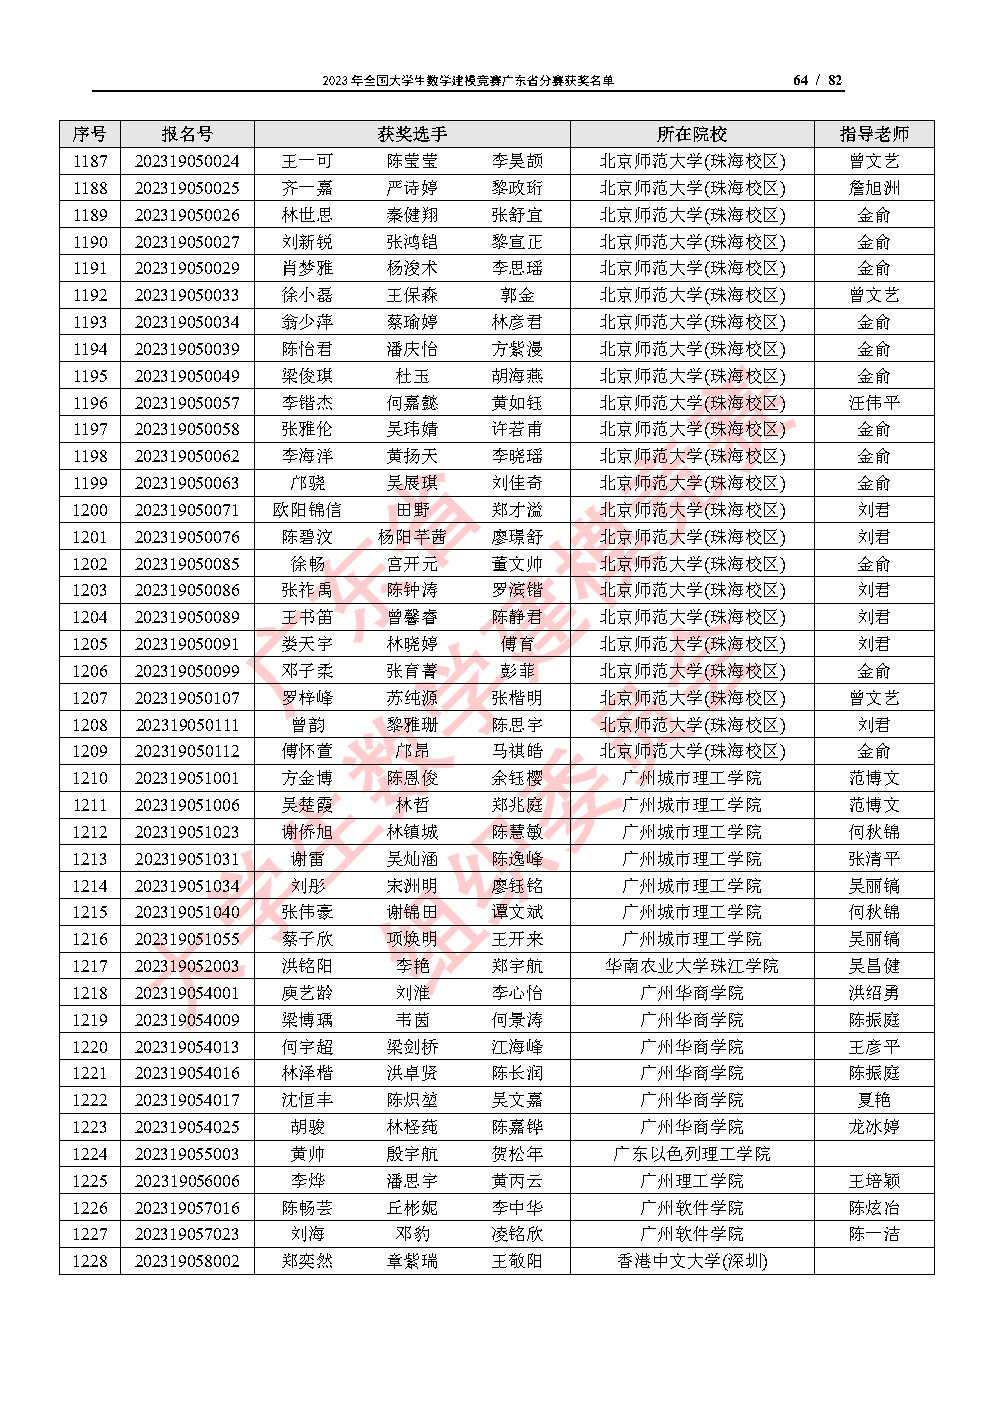 2023年全国大学生数学建模竞赛广东省分赛获奖名单_Page64.jpg